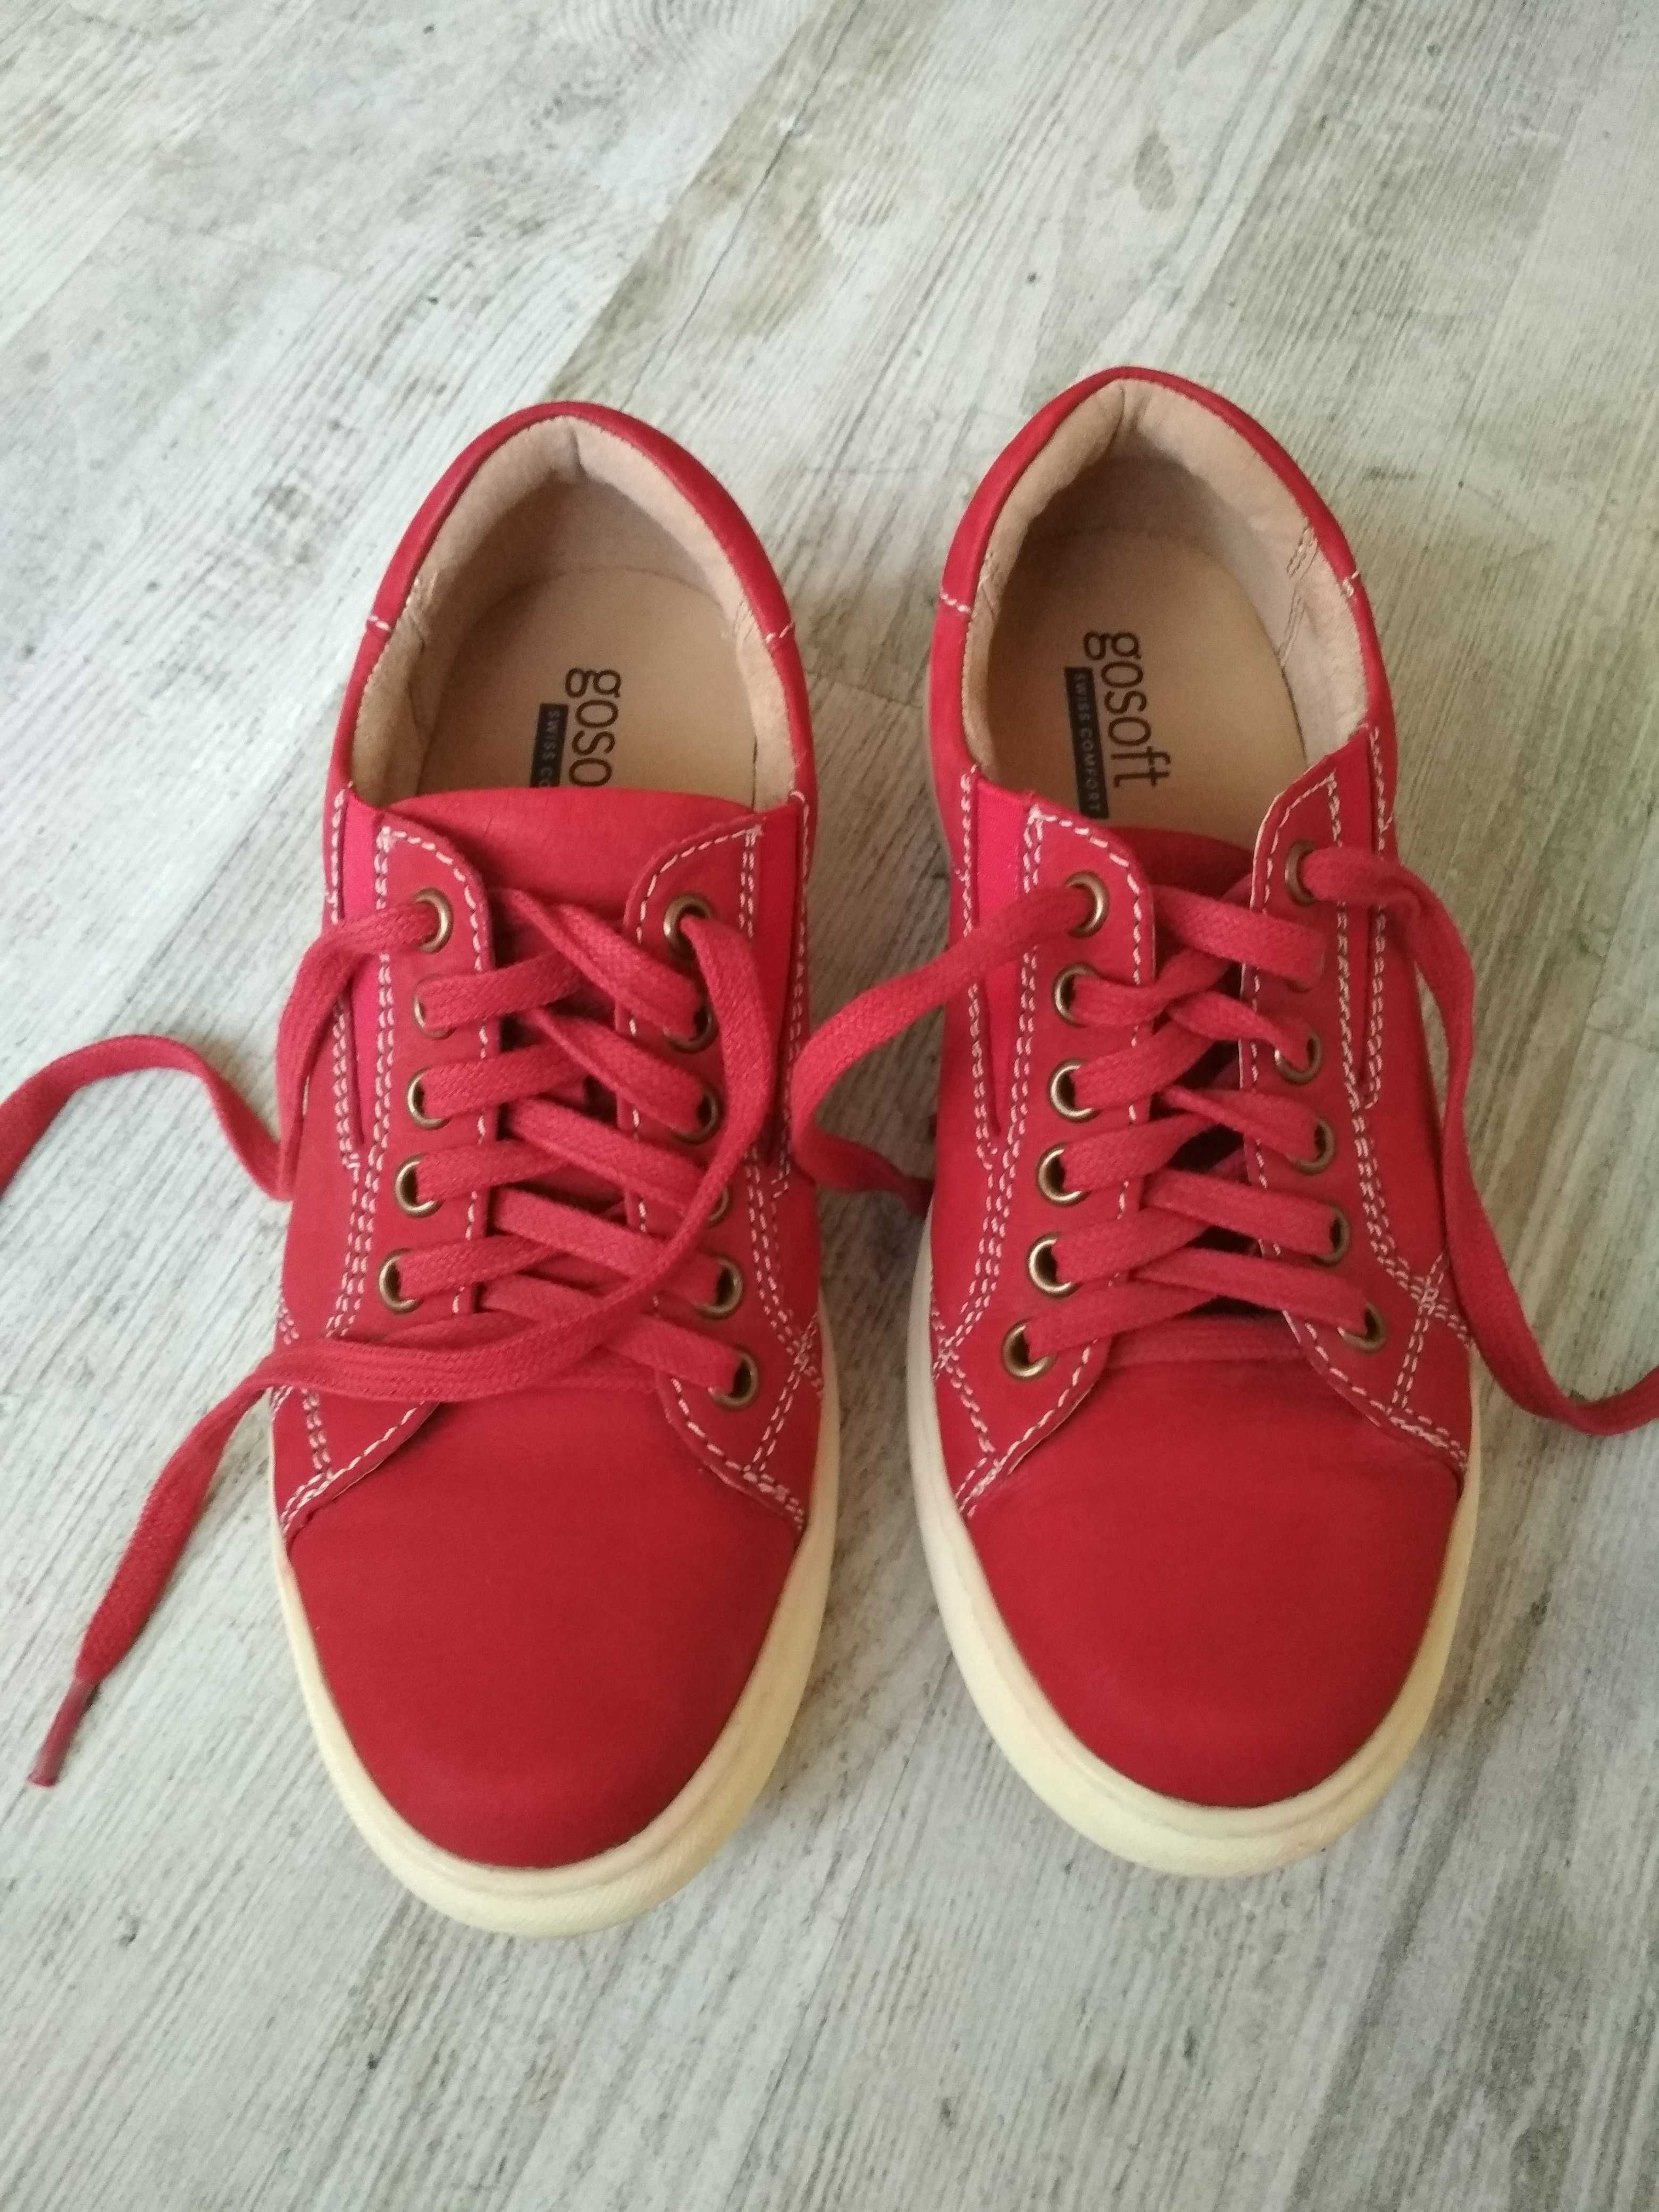 Jak nowe buty skórzane r. 38 czerwone gosoft 229zl wiosenne